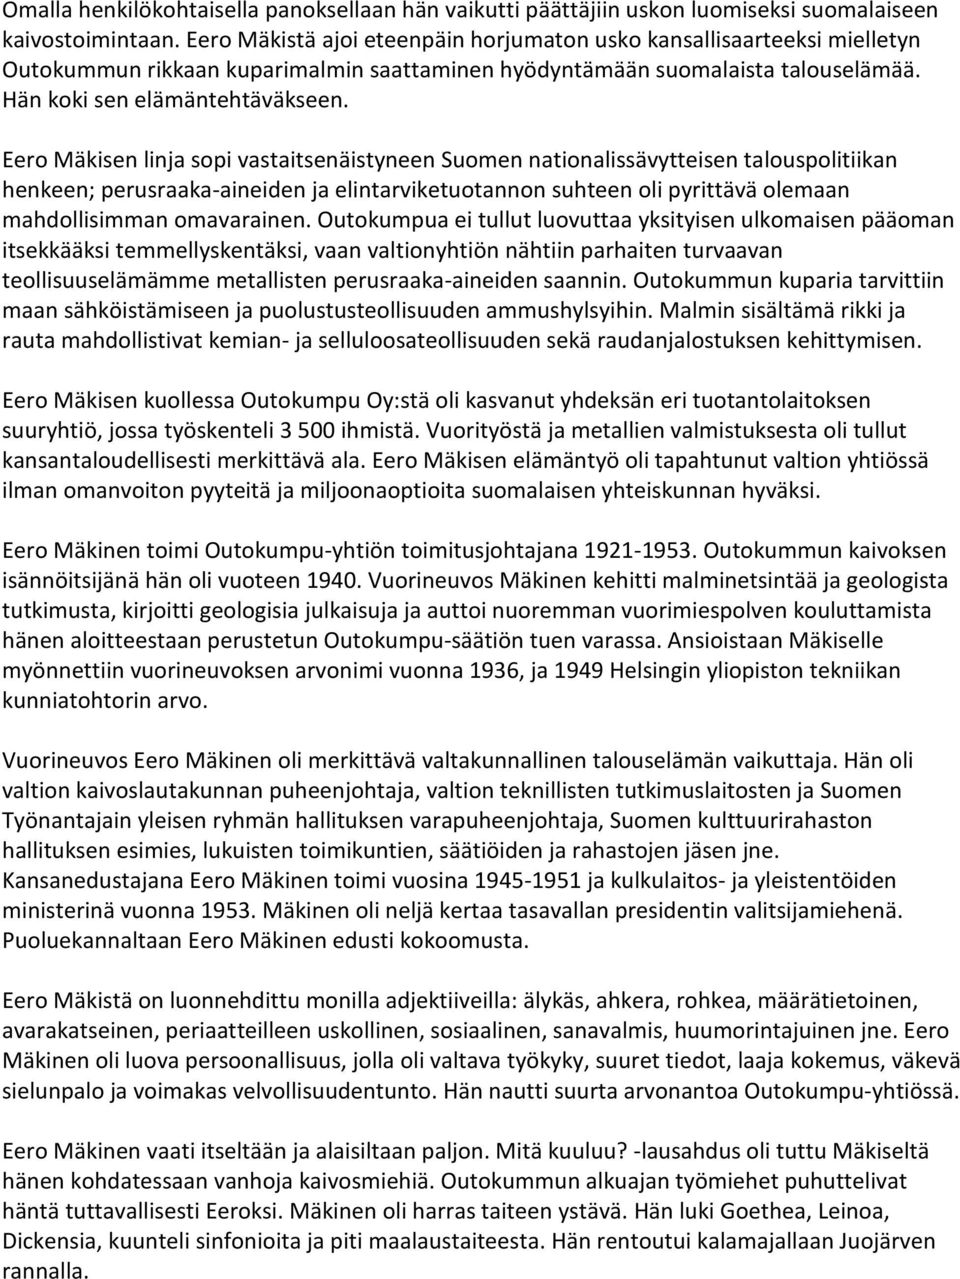 Eero Mäkisen linja sopi vastaitsenäistyneen Suomen nationalissävytteisen talouspolitiikan henkeen; perusraaka-aineiden ja elintarviketuotannon suhteen oli pyrittävä olemaan mahdollisimman omavarainen.